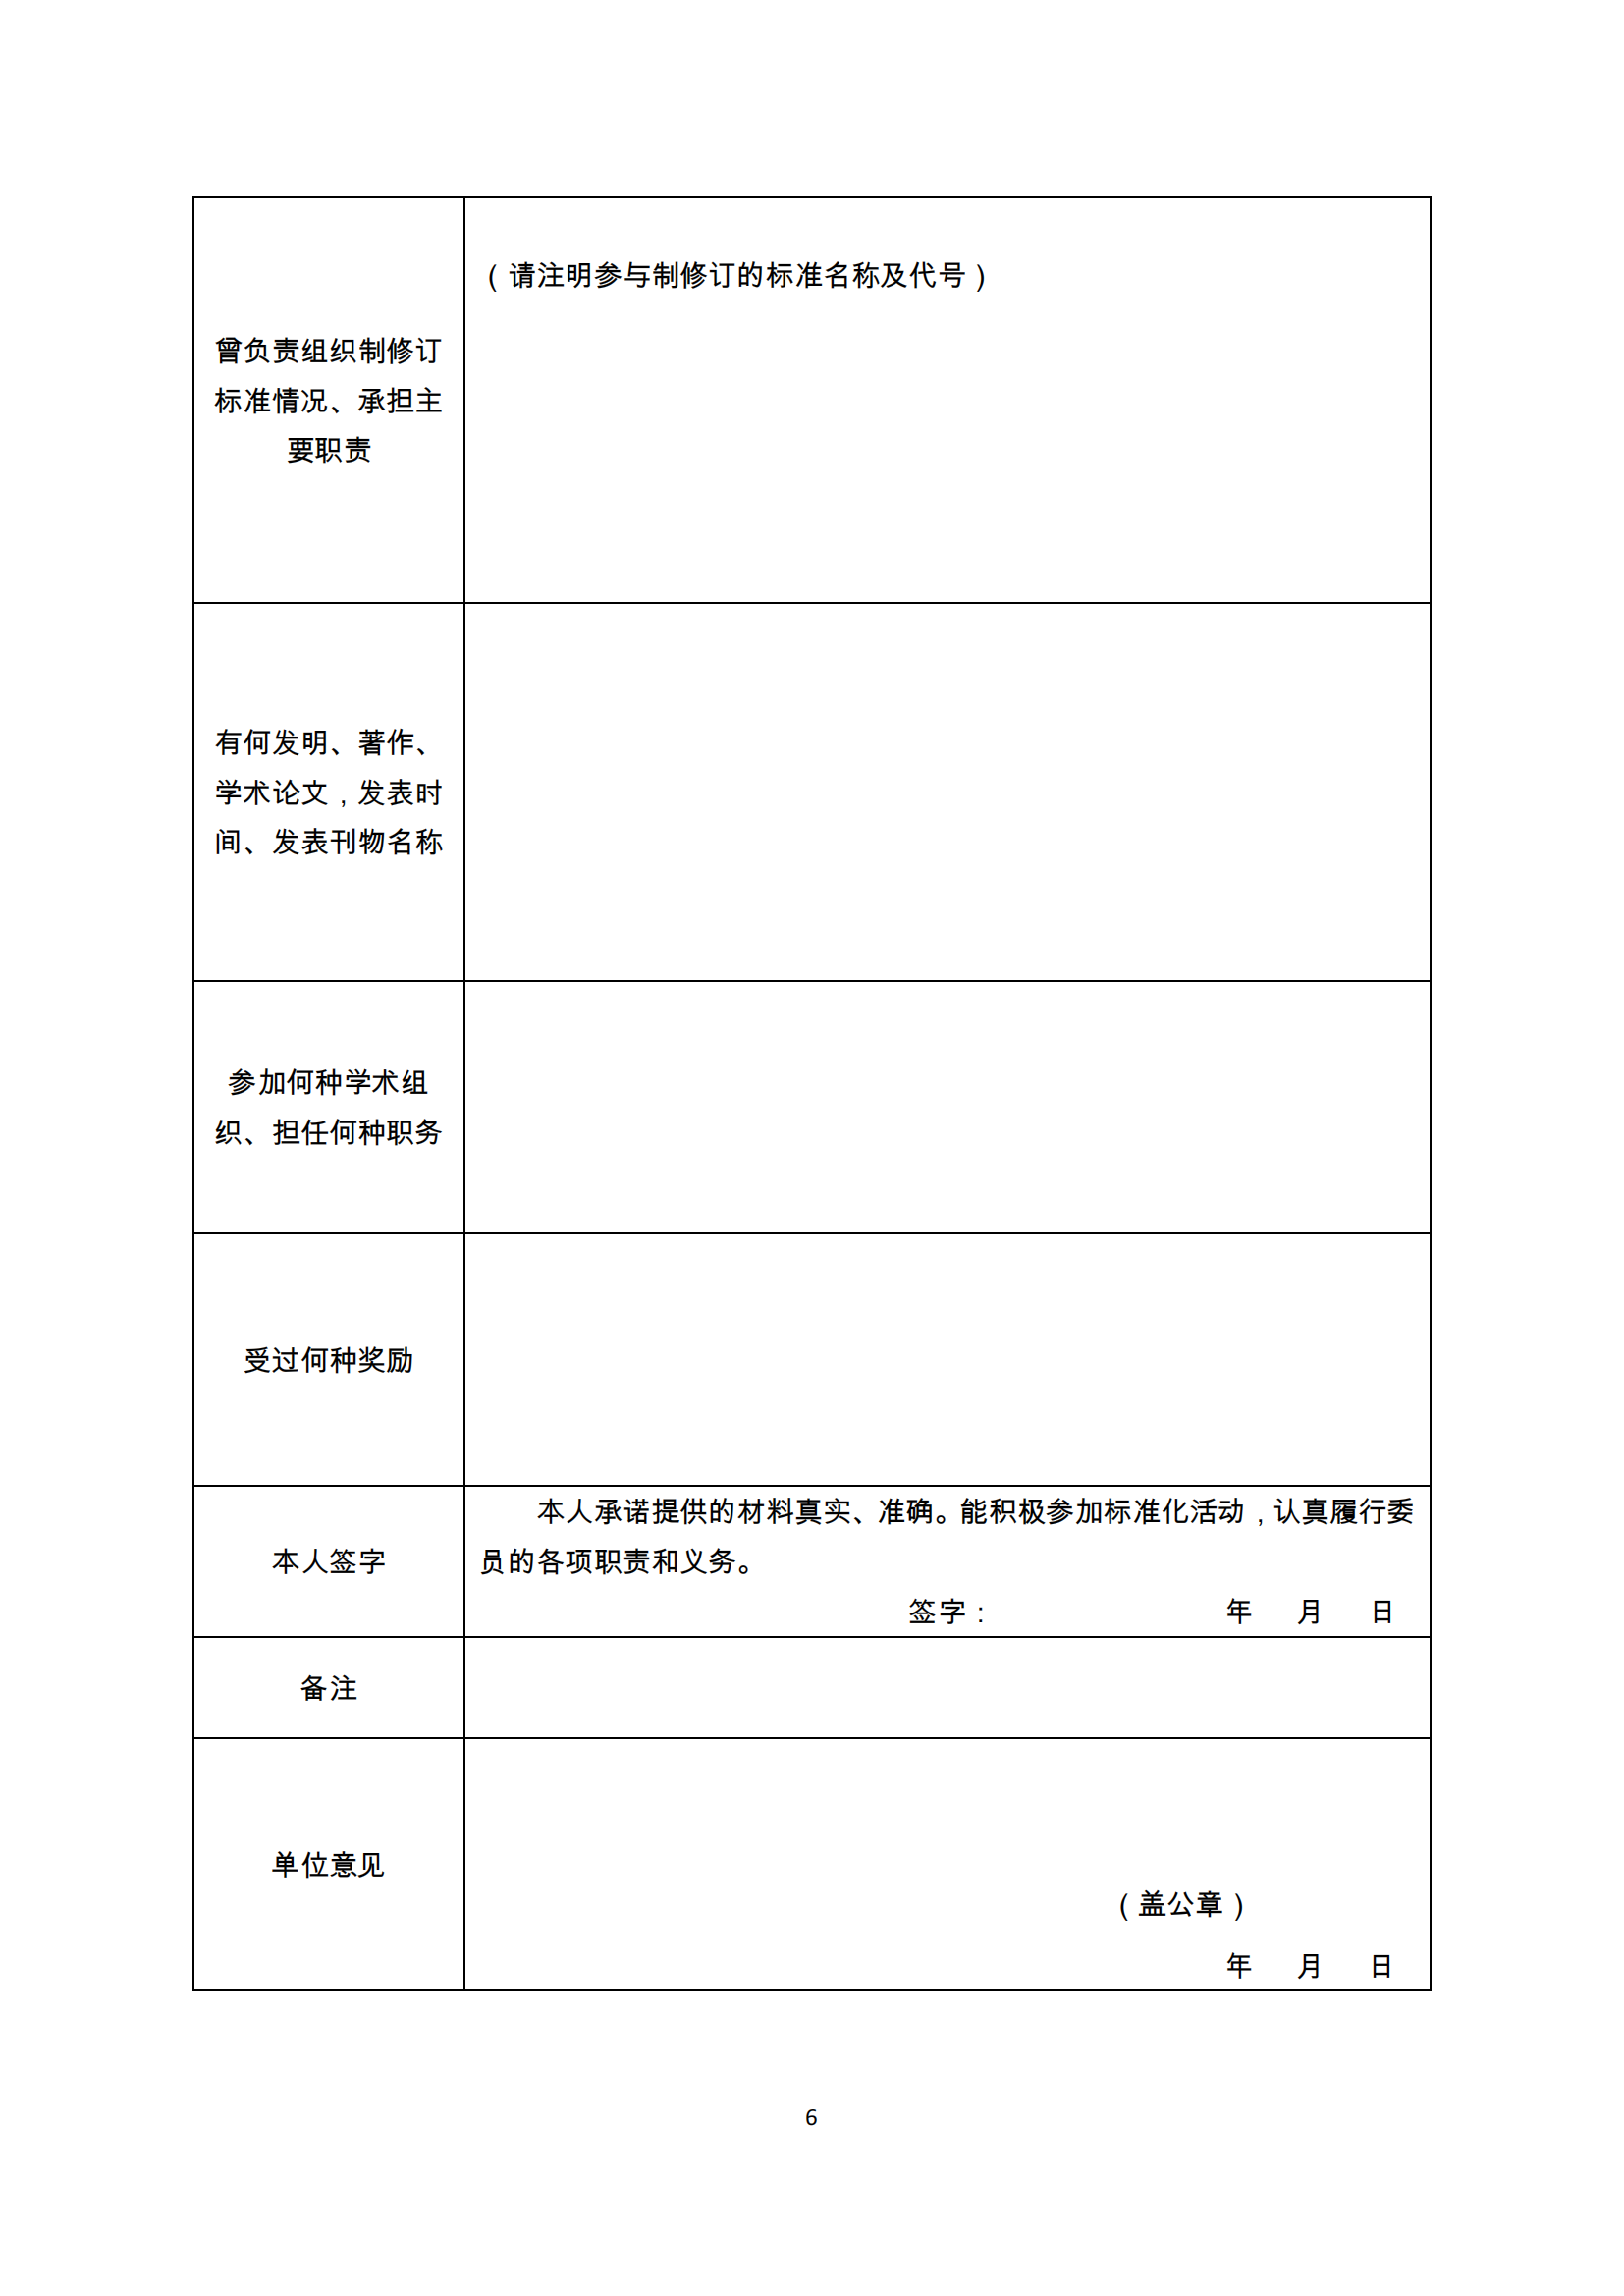 陕标委22-2 关于征集标准化专家的函220809 -挂网_05.png